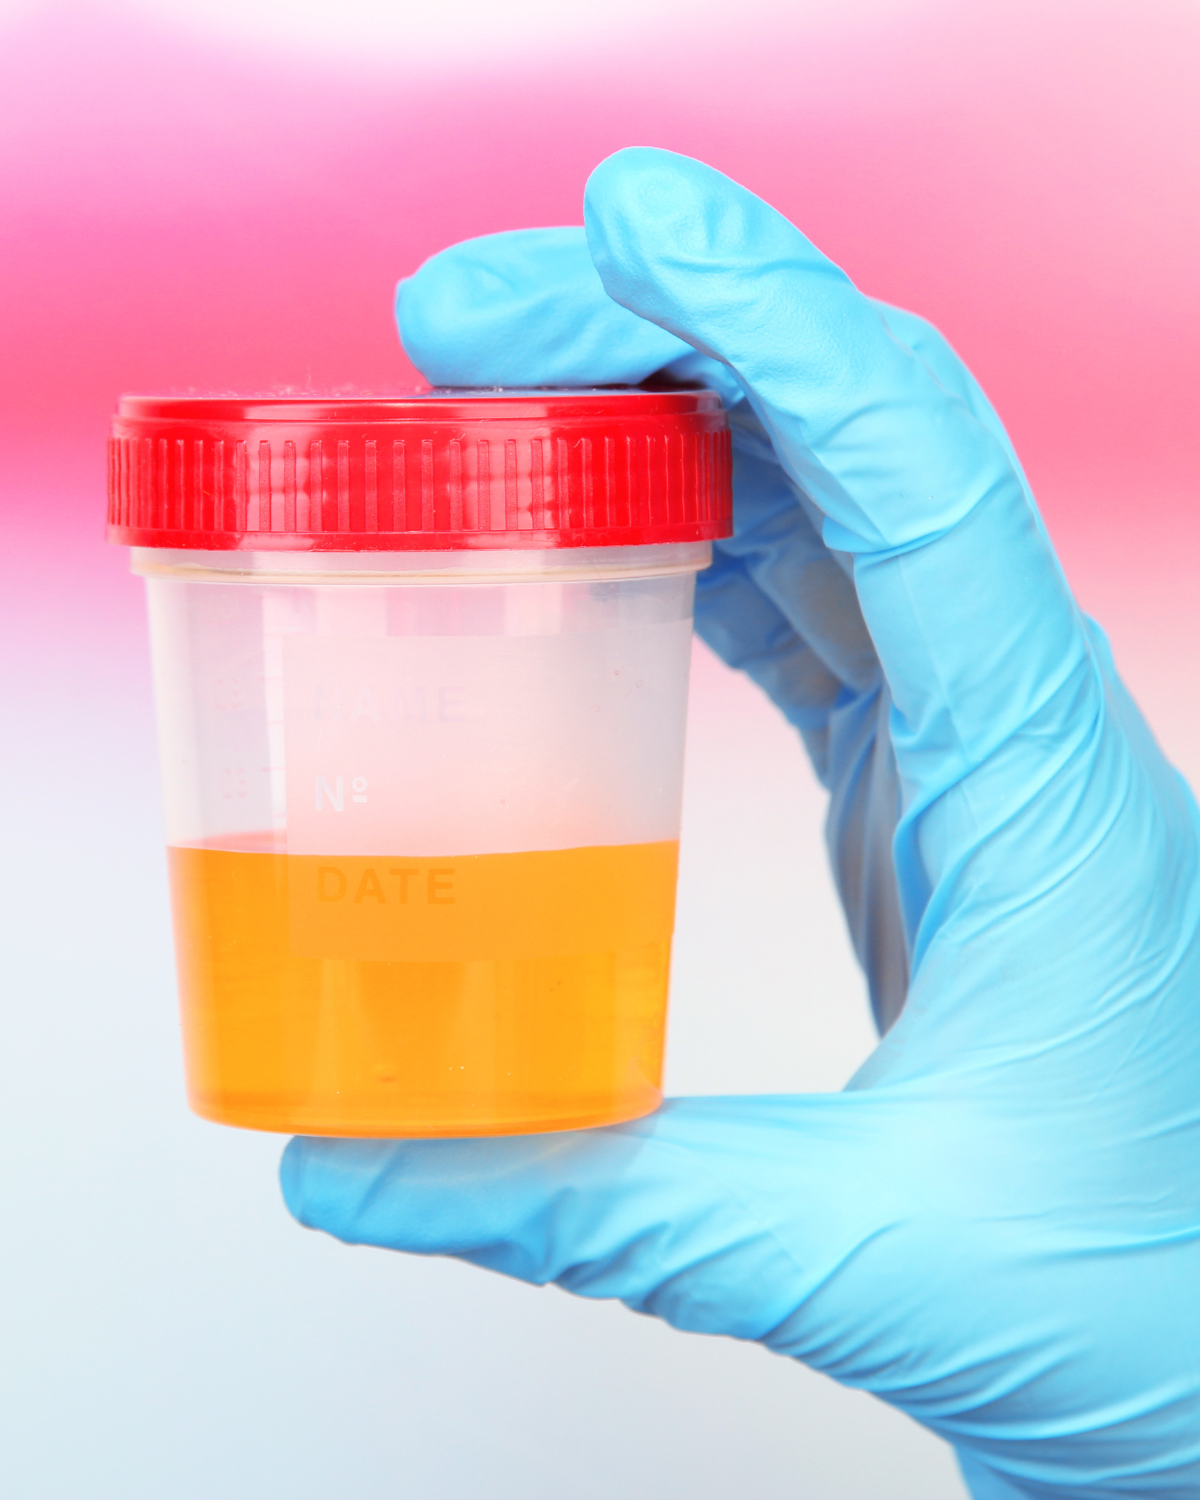 A urine sample